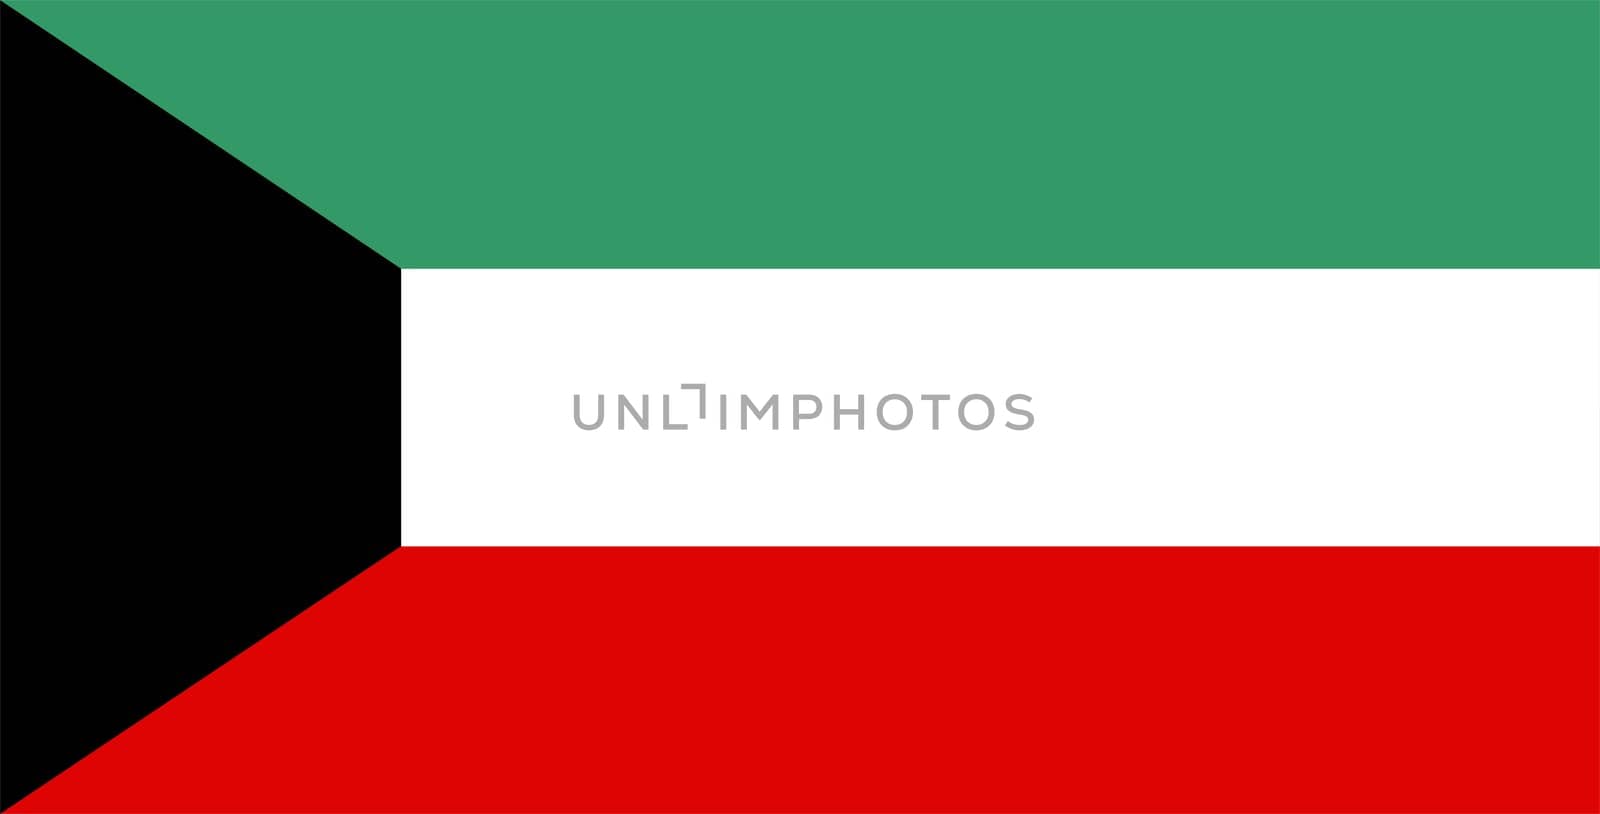 Kuwait national flag by tony4urban